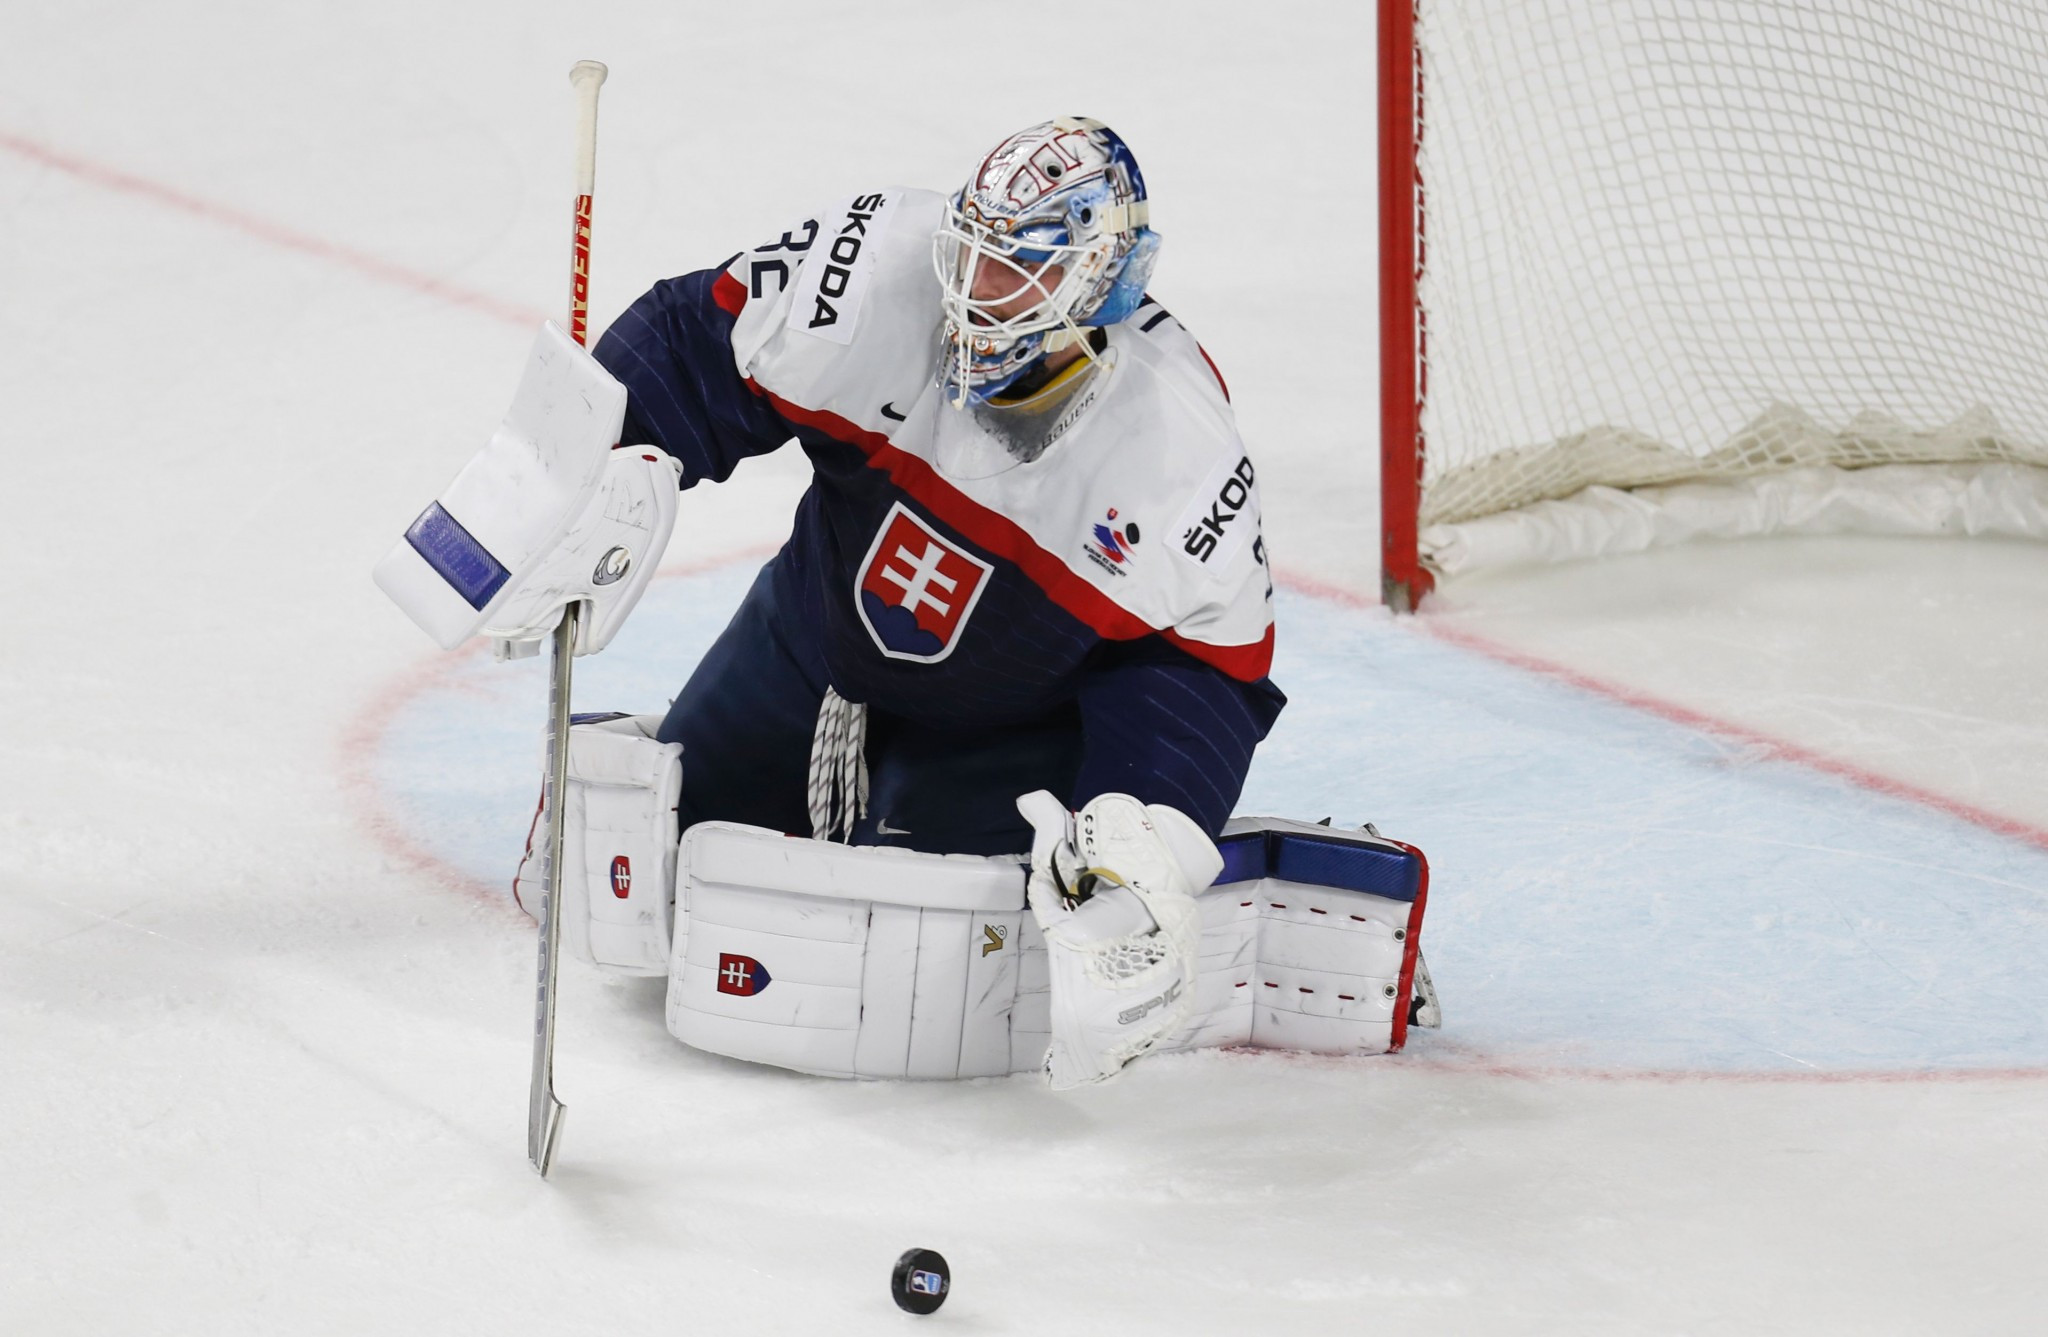 Najlepší výsledok Slovenska v olympijskom ľadovom hokeji mužov vo Vancouveri 2010, štvrté miesto © Getty Images